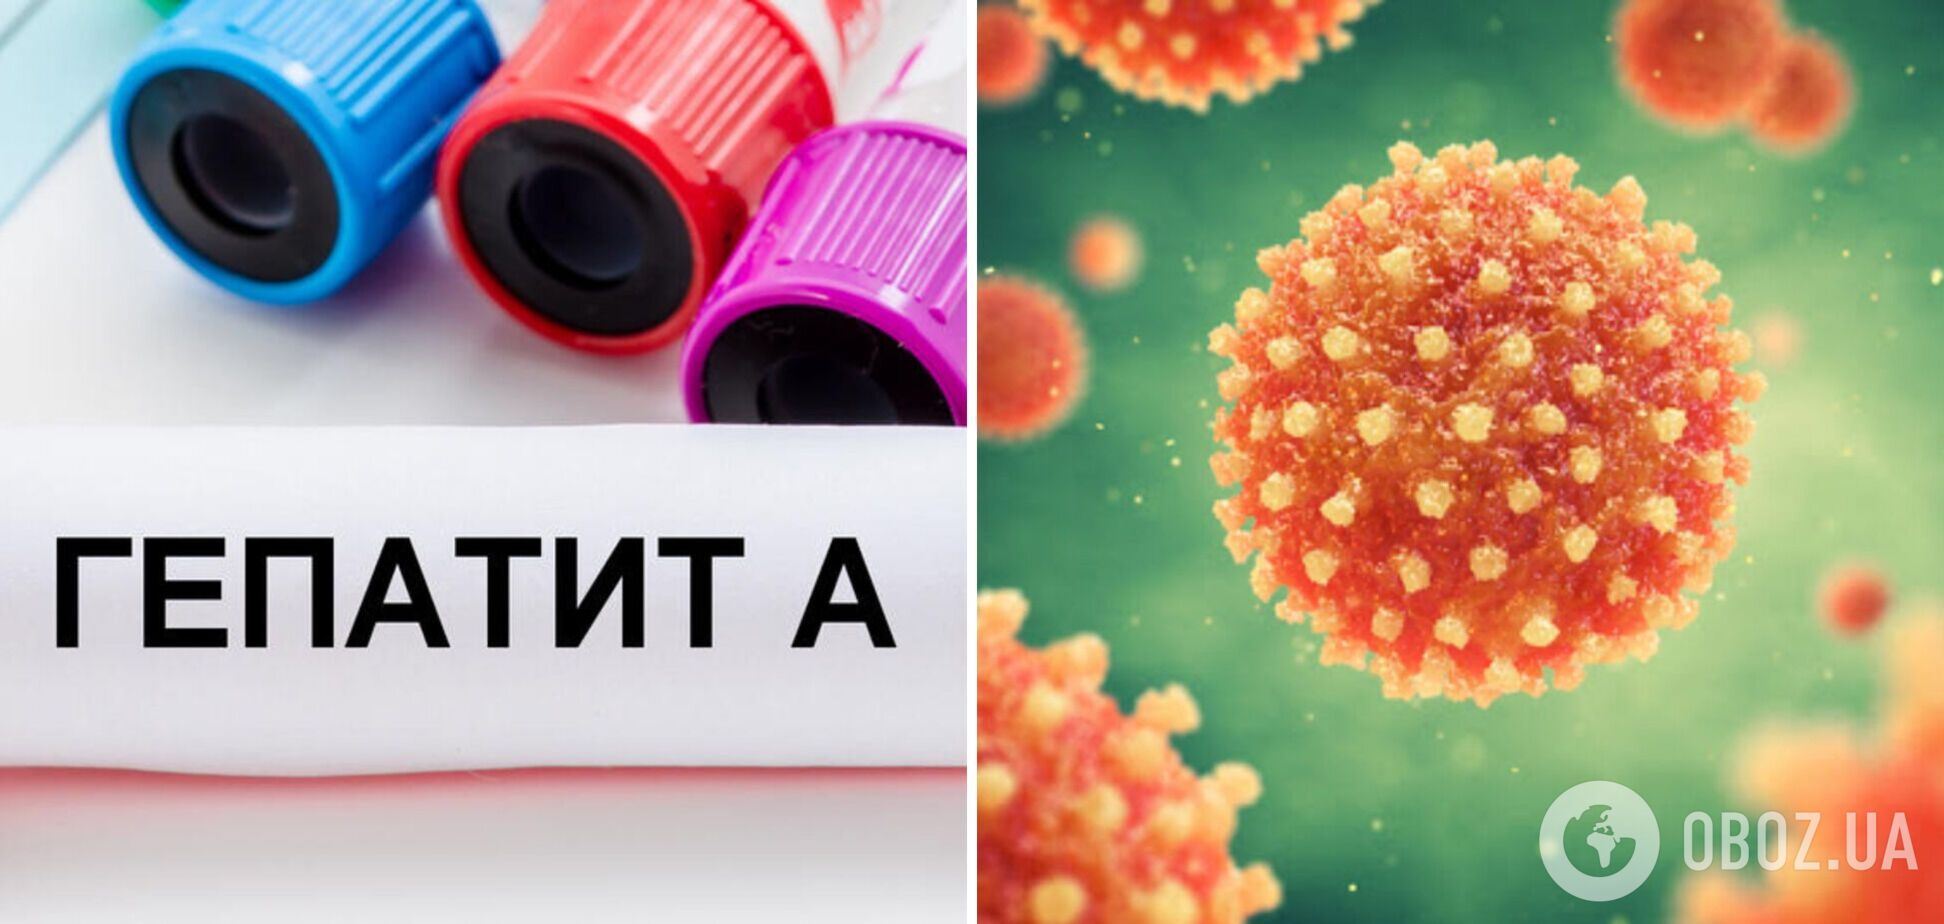 Гепатит А зафиксировали уже в пяти областях Украины: как уберечься